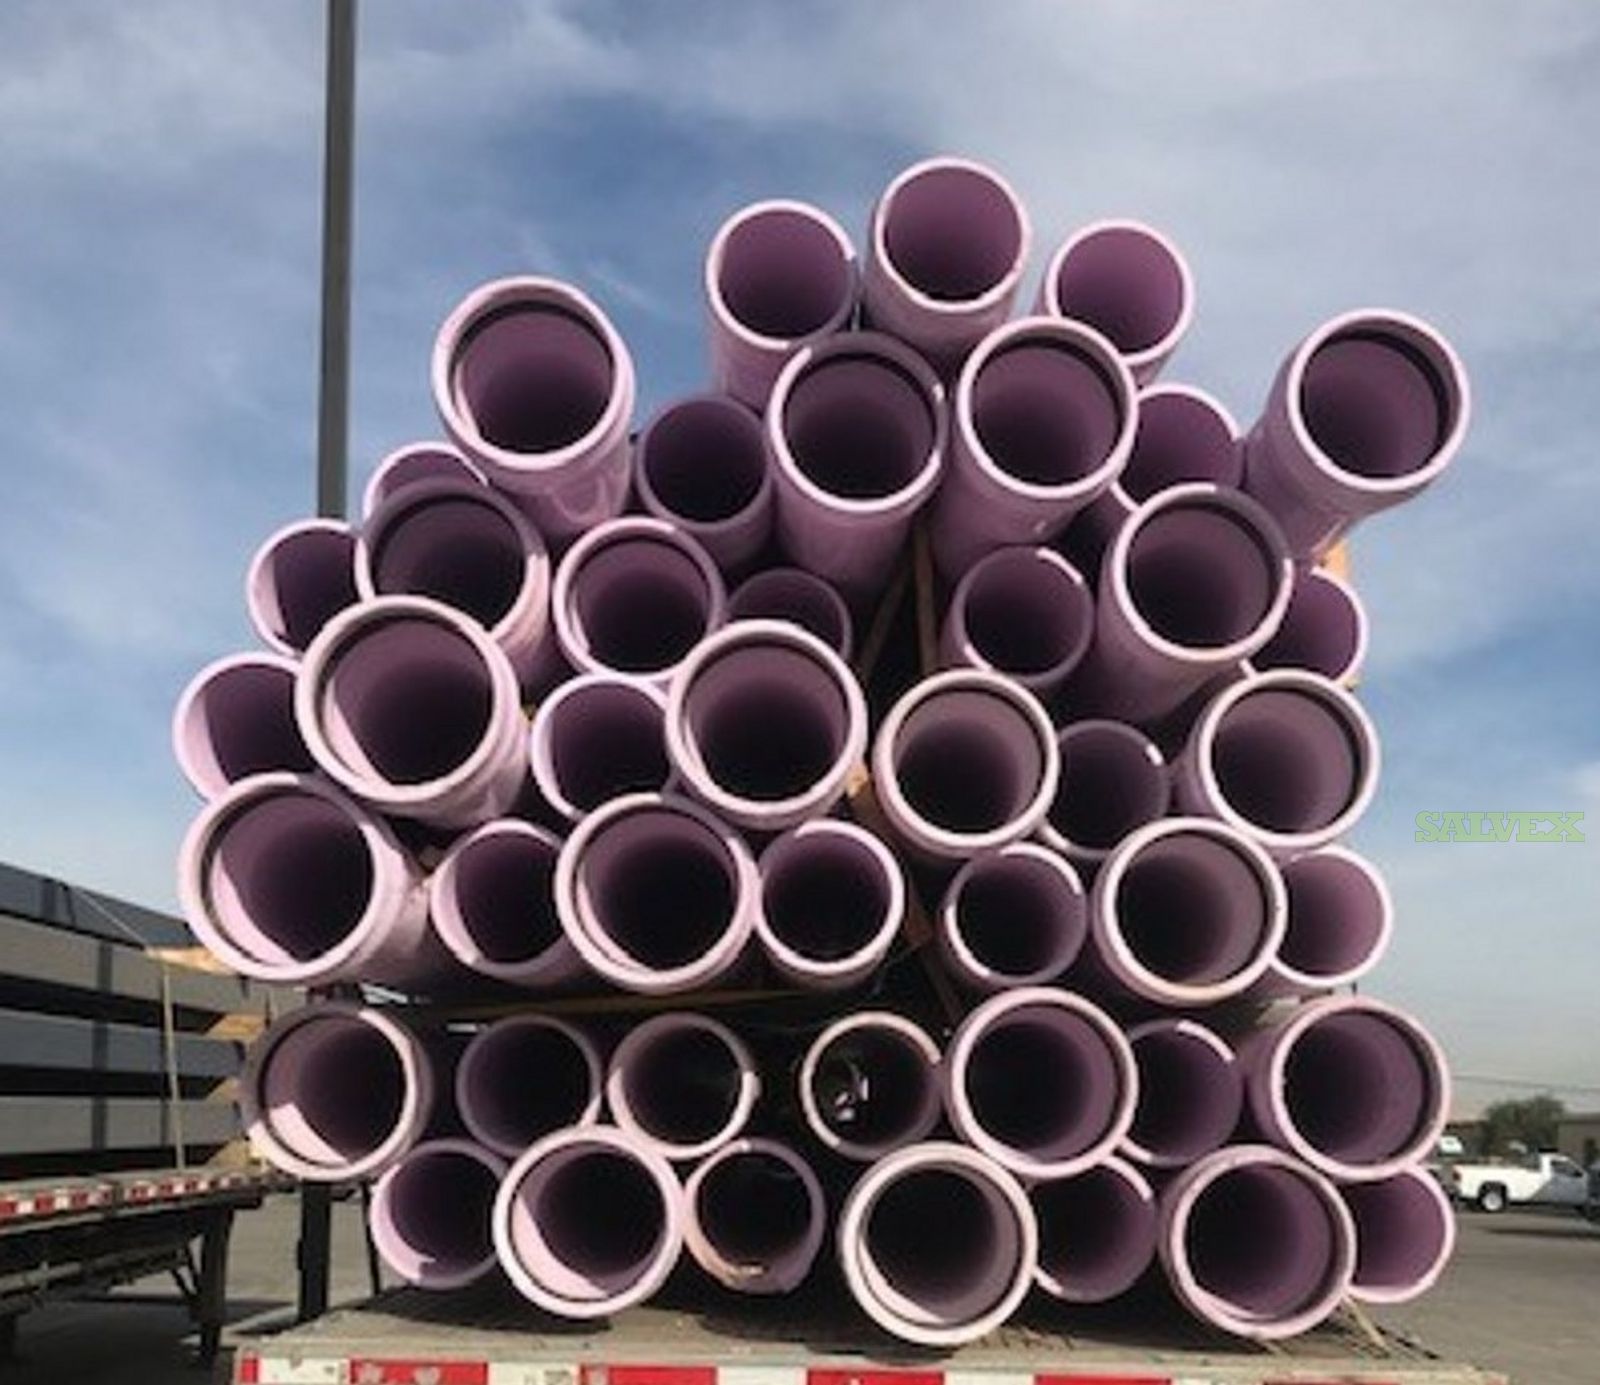 12 x 20' DR14 C900 PVC Purple Pipes w/ Gaskets (91 Units / 1,820 Feet)